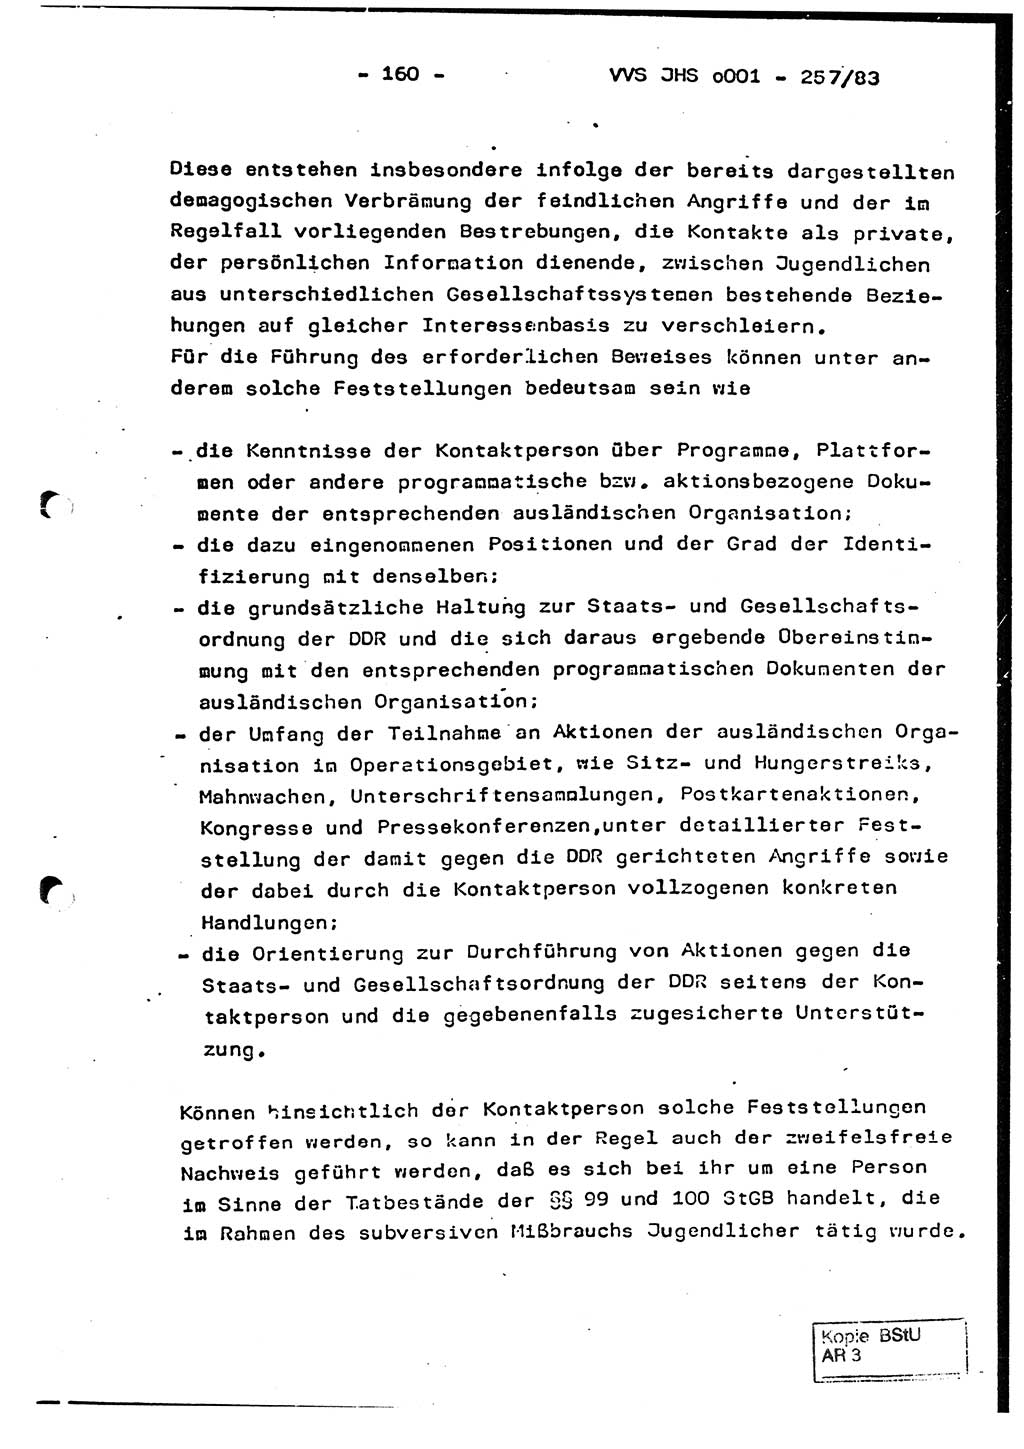 Dissertation, Oberst Helmut Lubas (BV Mdg.), Oberstleutnant Manfred Eschberger (HA IX), Oberleutnant Hans-Jürgen Ludwig (JHS), Ministerium für Staatssicherheit (MfS) [Deutsche Demokratische Republik (DDR)], Juristische Hochschule (JHS), Vertrauliche Verschlußsache (VVS) o001-257/83, Potsdam 1983, Seite 160 (Diss. MfS DDR JHS VVS o001-257/83 1983, S. 160)